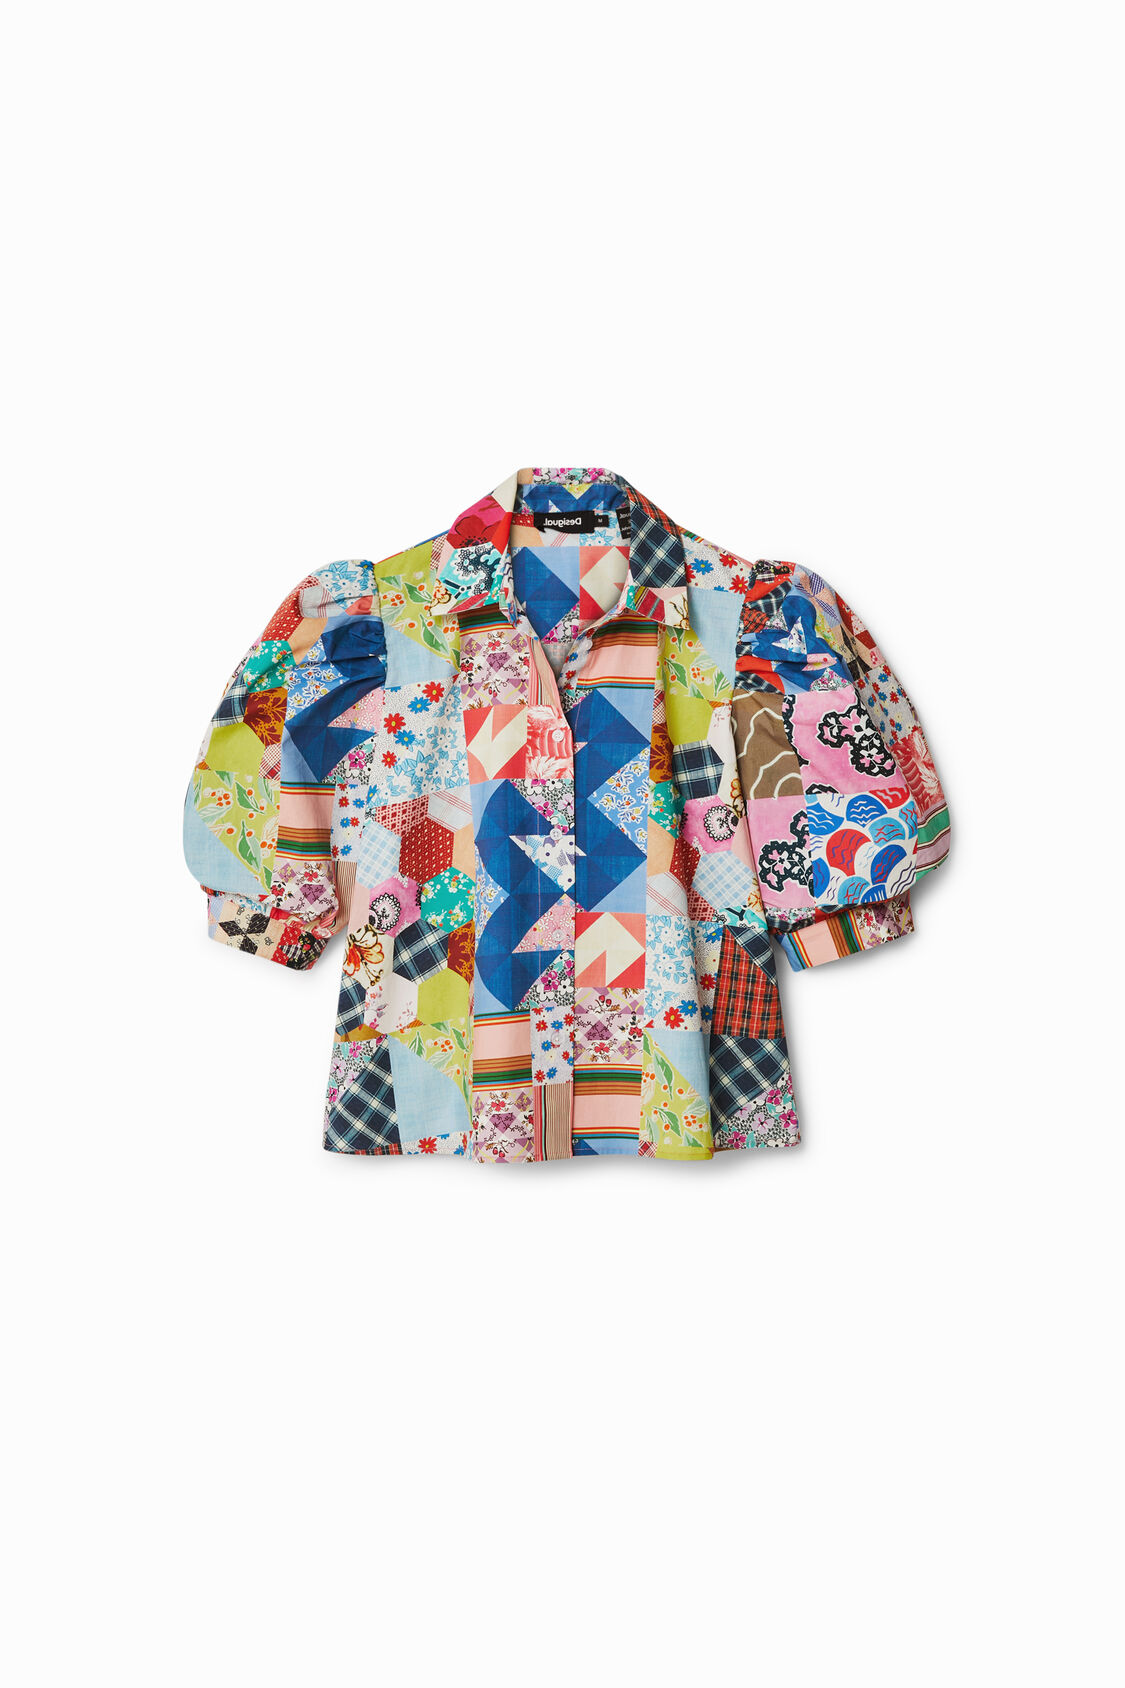 Camisa patchwork Johnson Hartig | Desigual.com